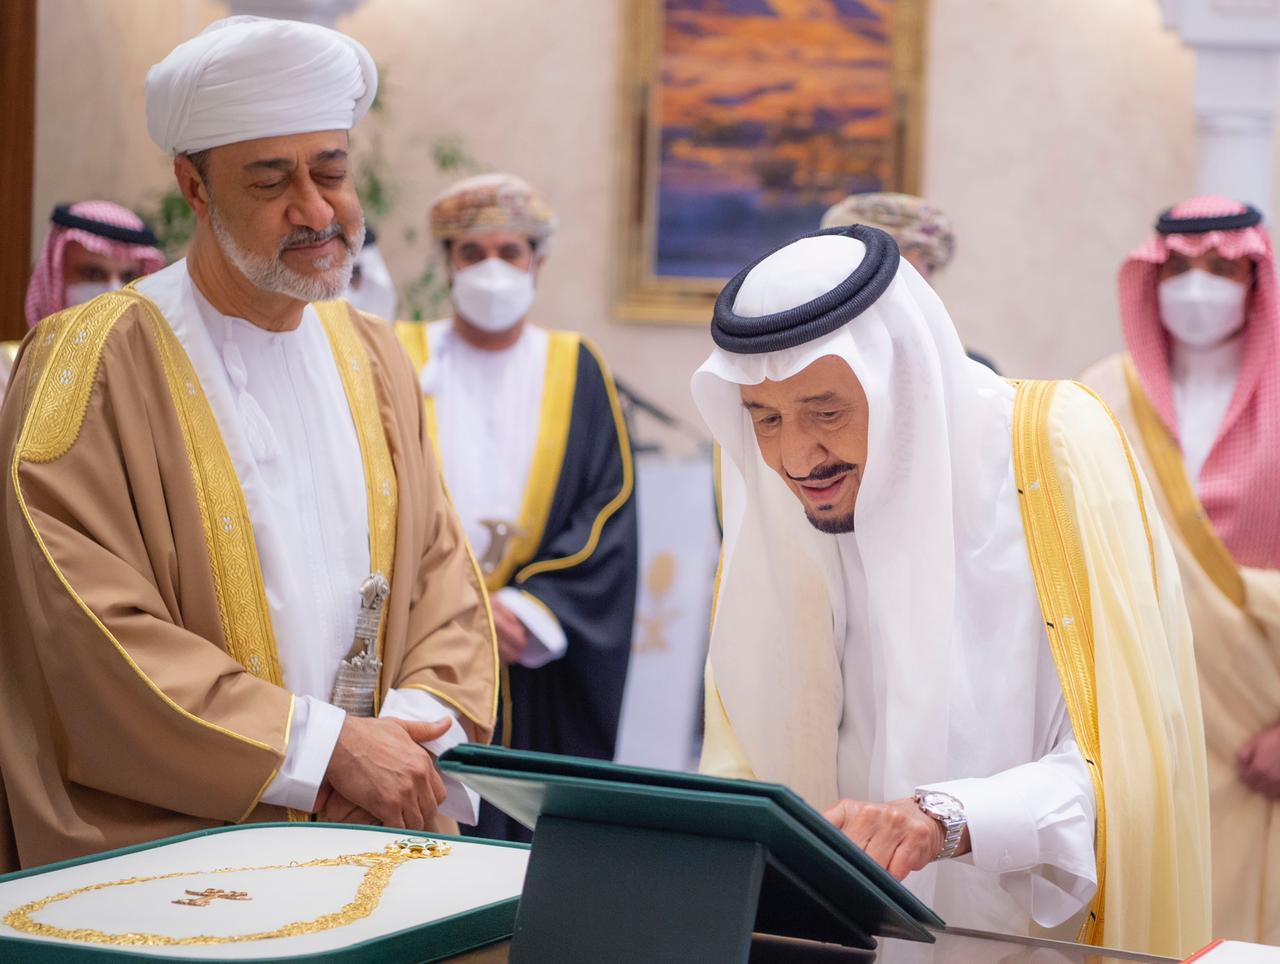 سلطان عمان: السعودية بقيادة الملك سلمان تمضي بعزم وثبات نحو مستقبل مشرق